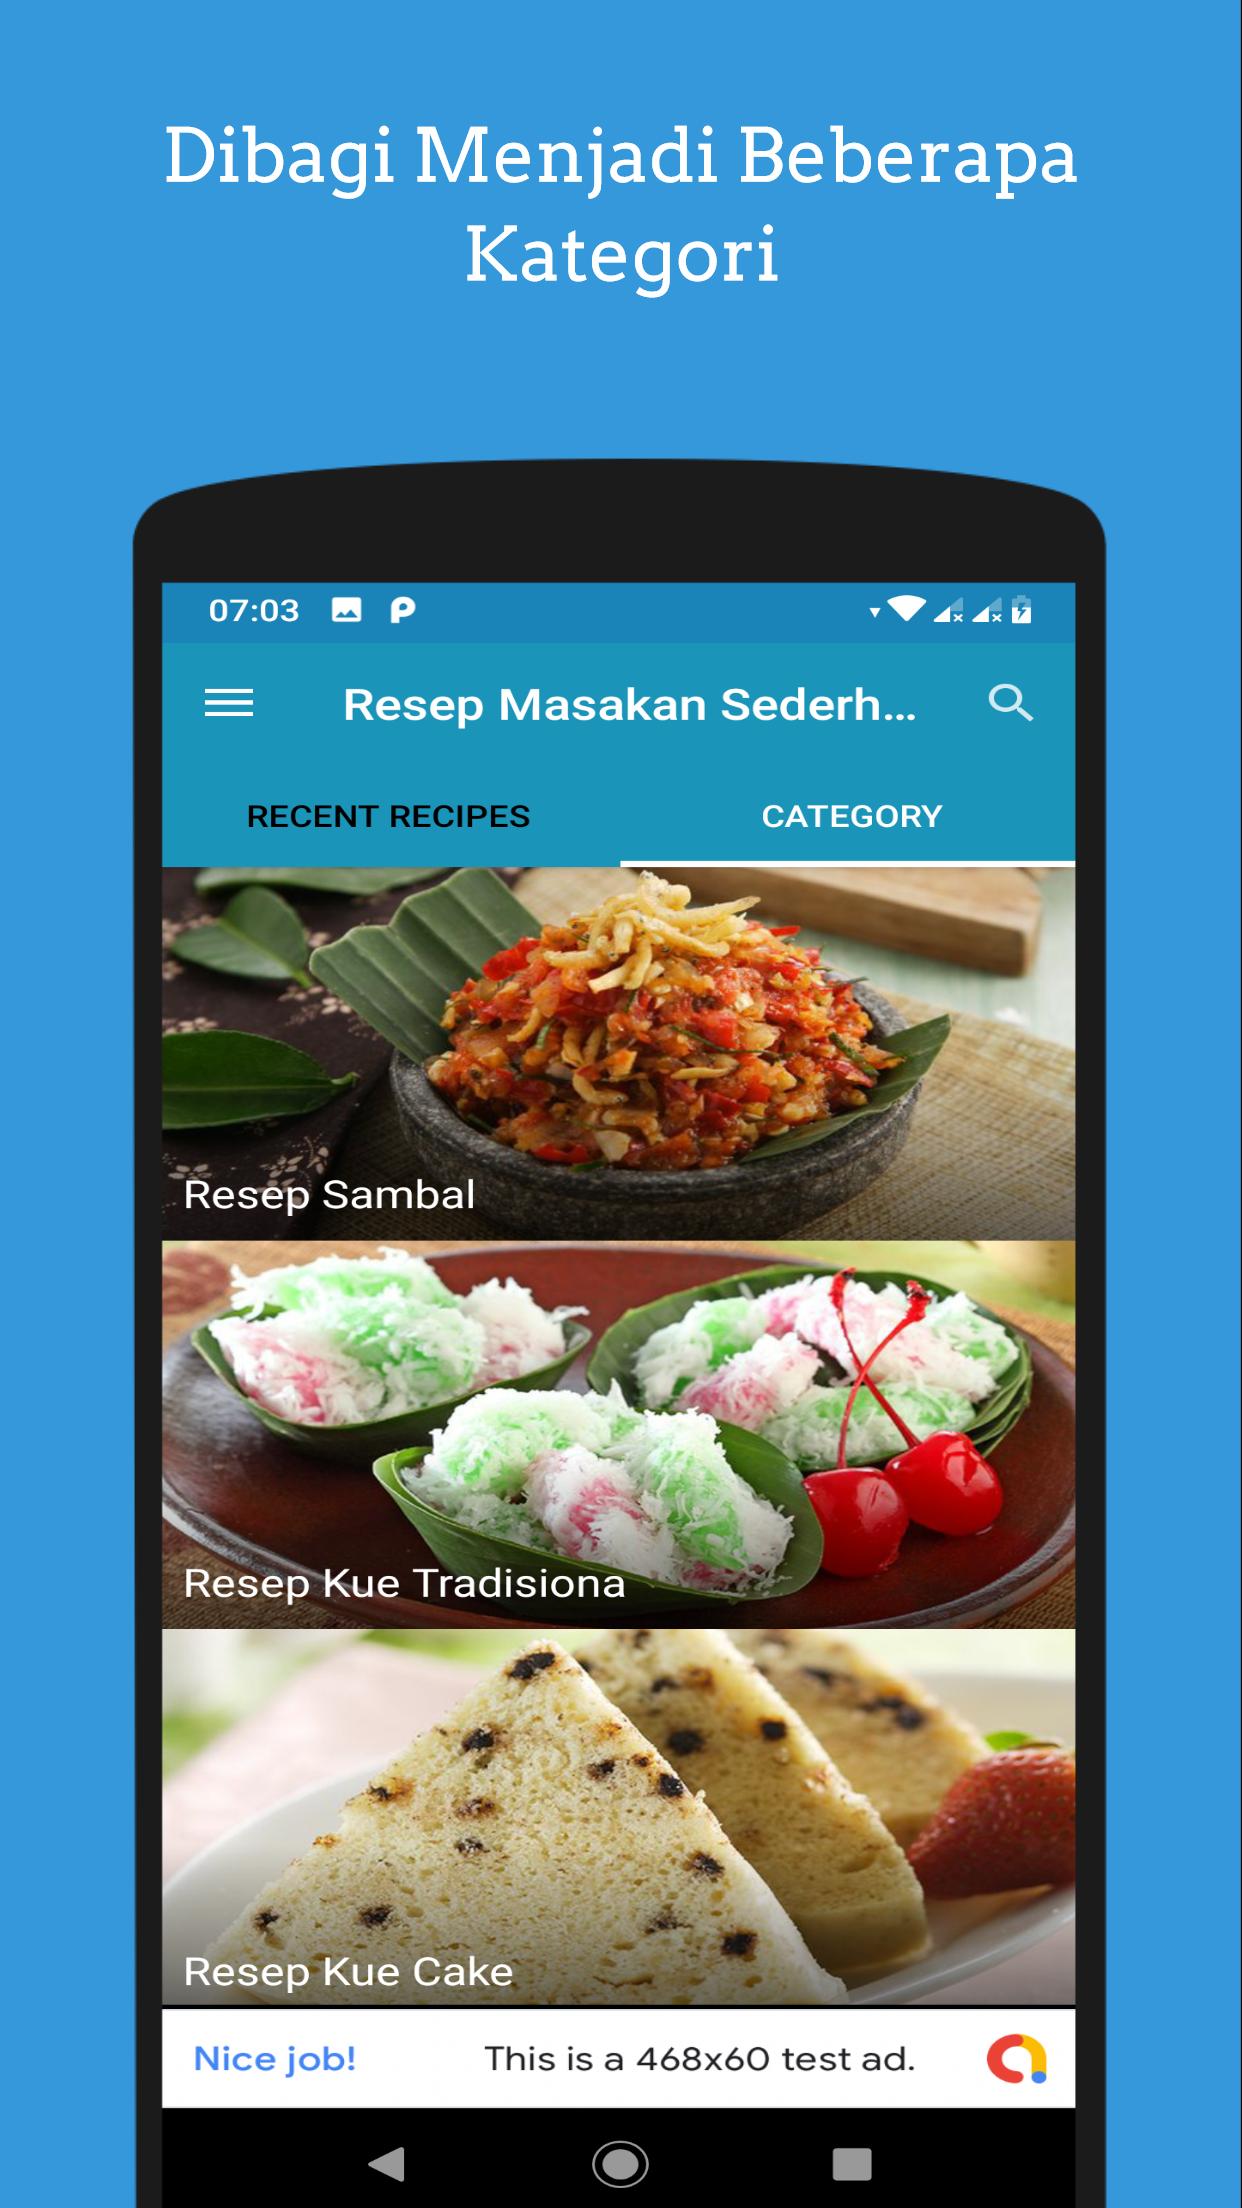 Resep Masakan Sederhana For Android Apk Download